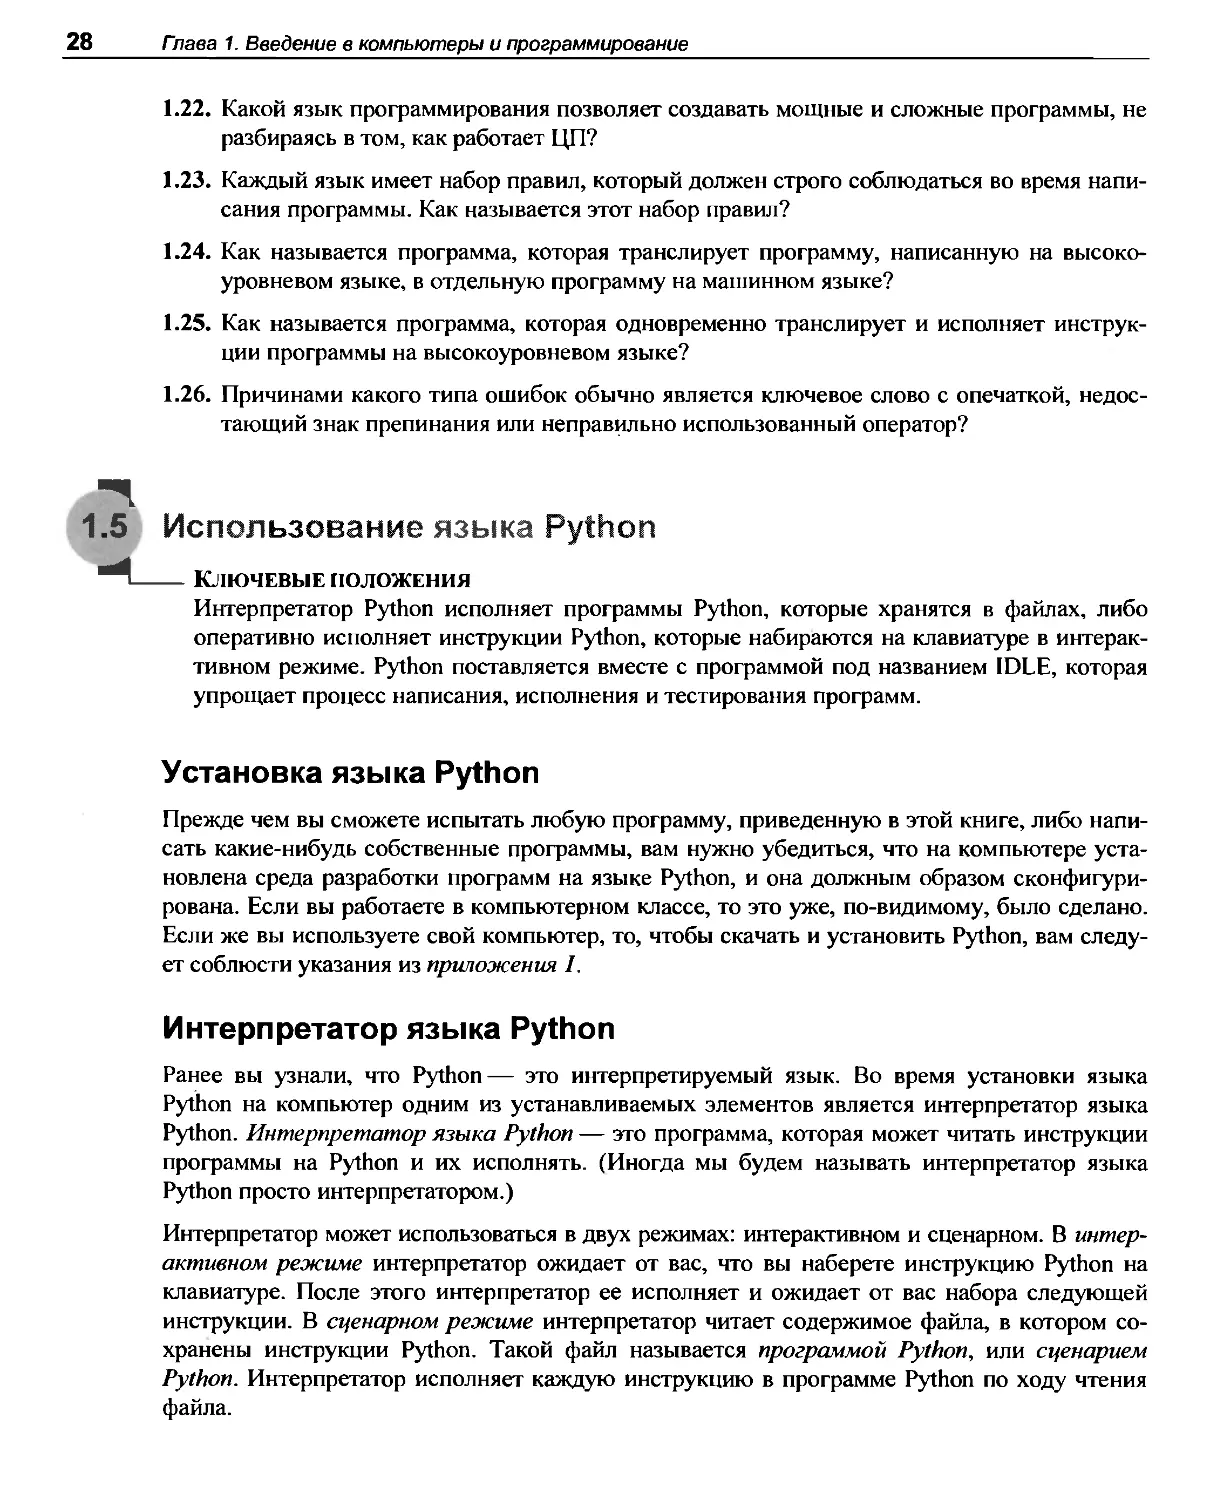 1.5 Использование языка Python
Интерпретатор языка Python